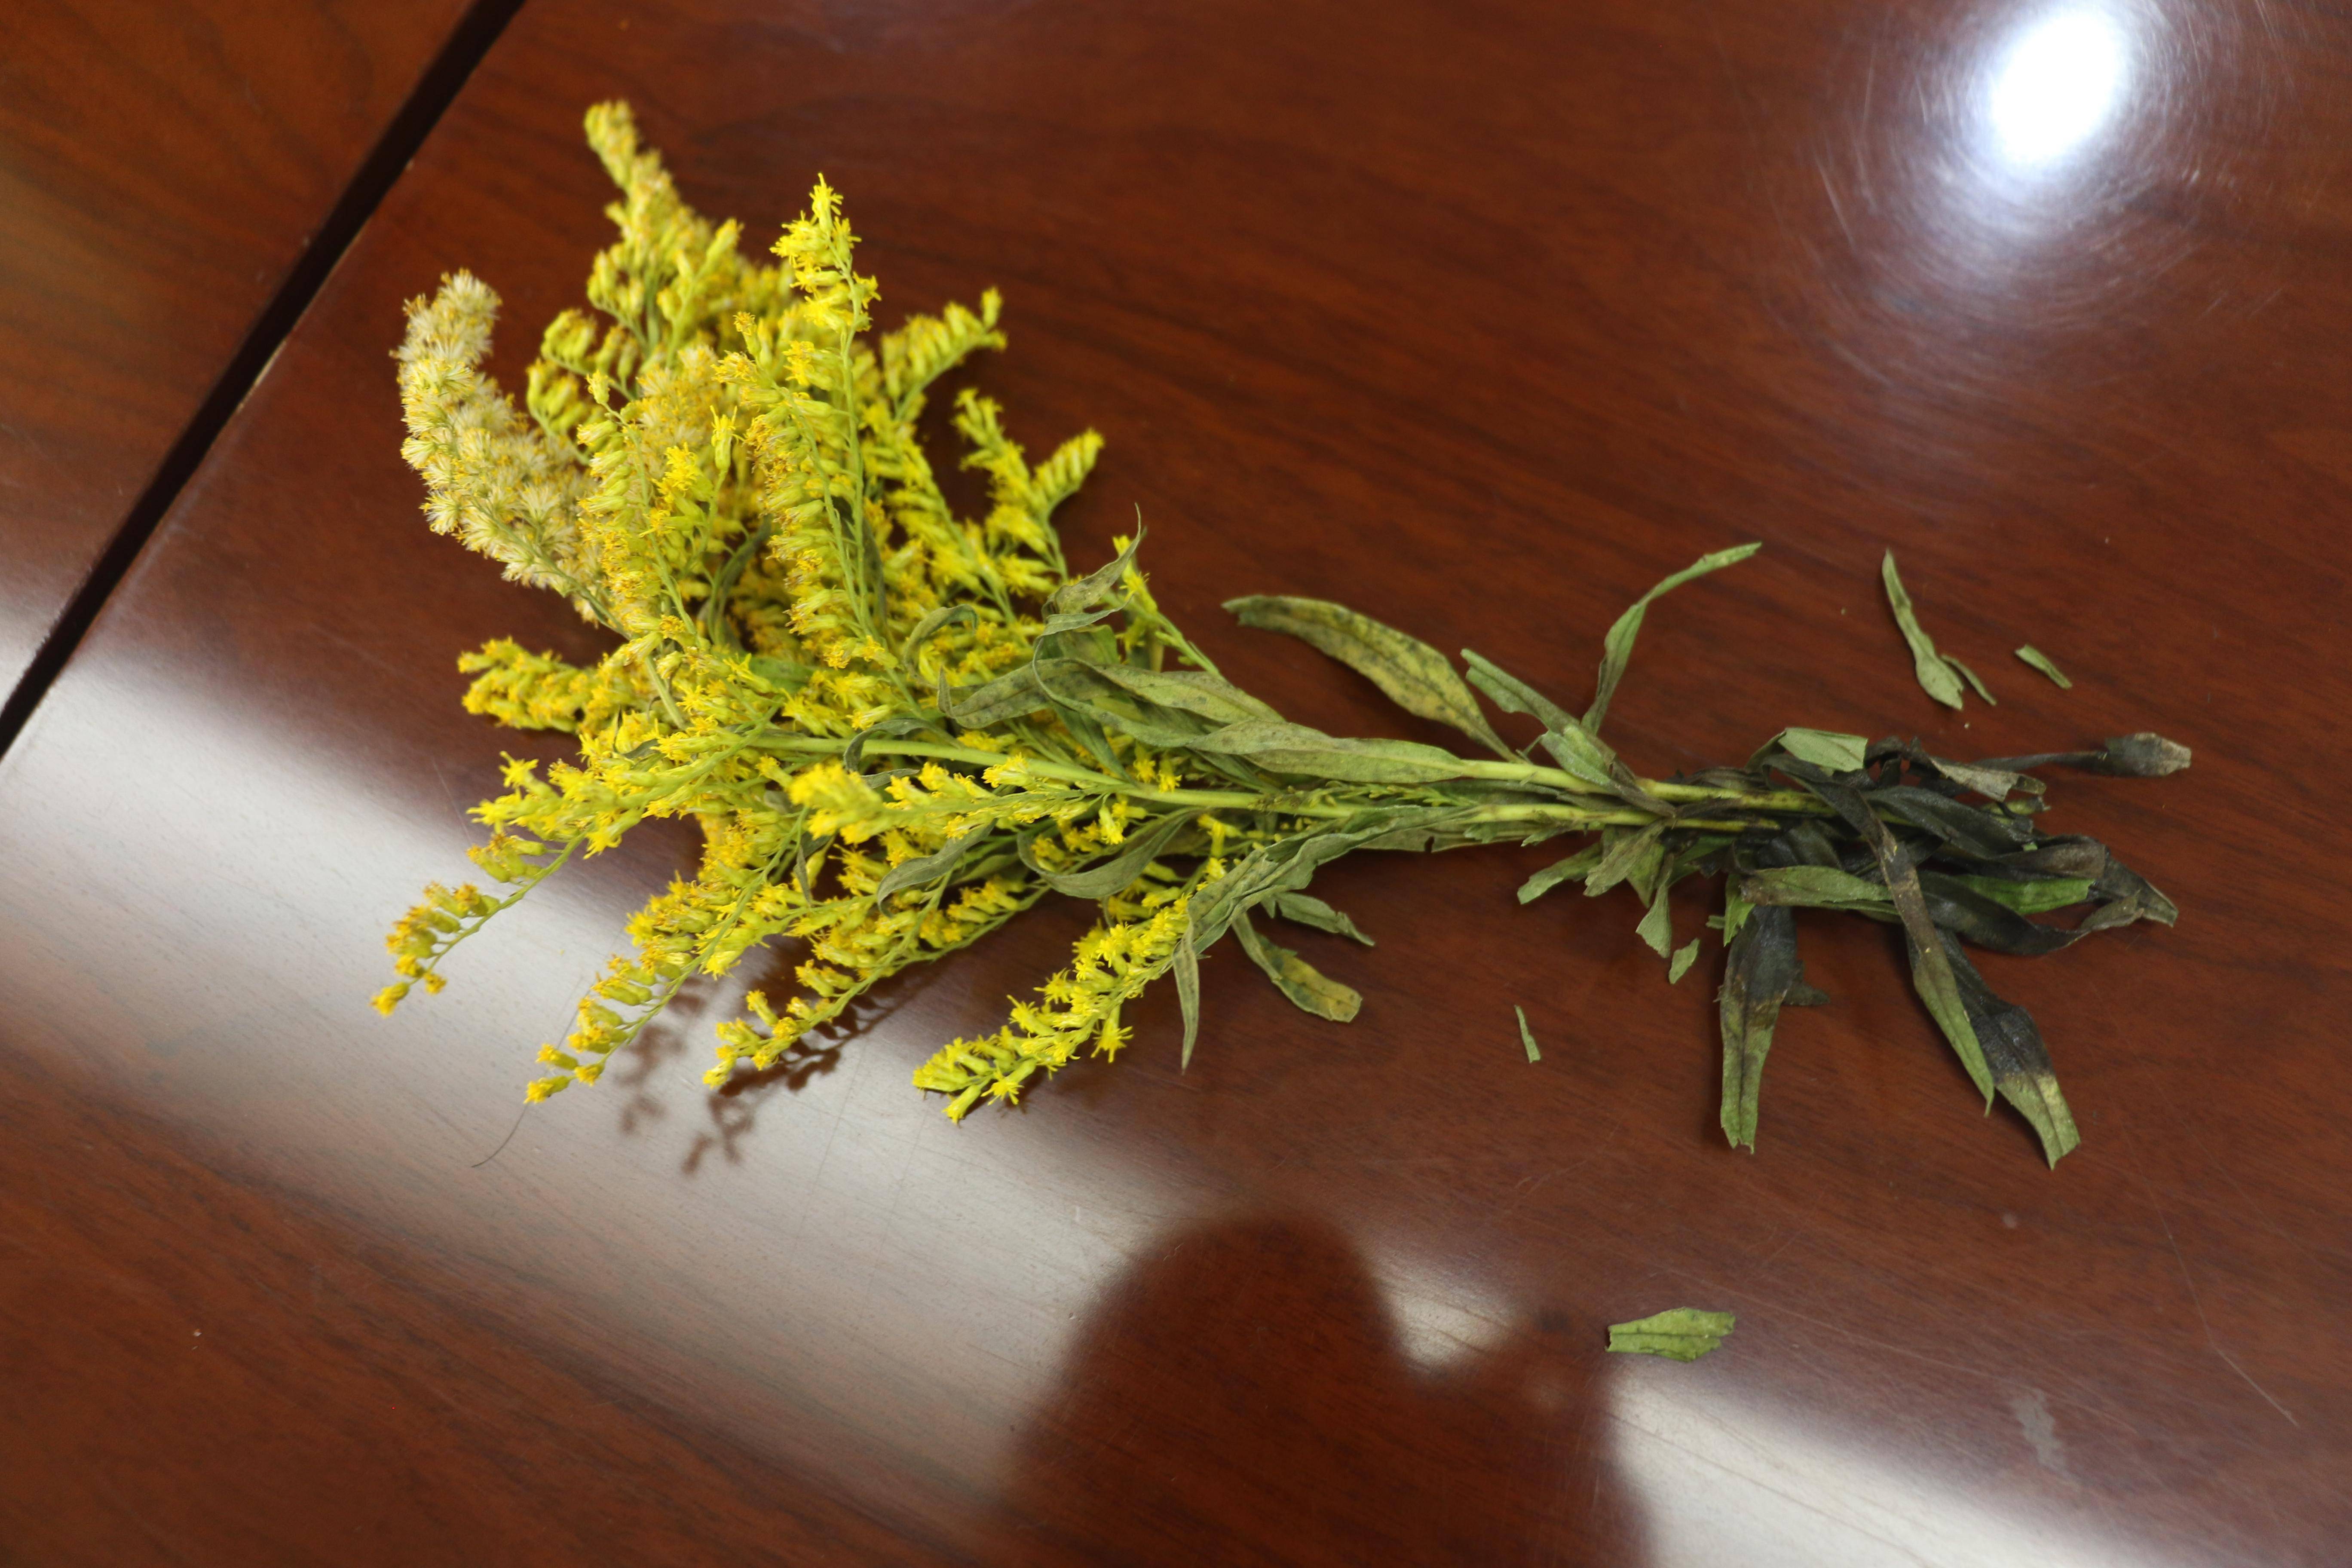 公开资料显示,加拿大一枝黄花是一种危害极大的外来入侵植物,被环境